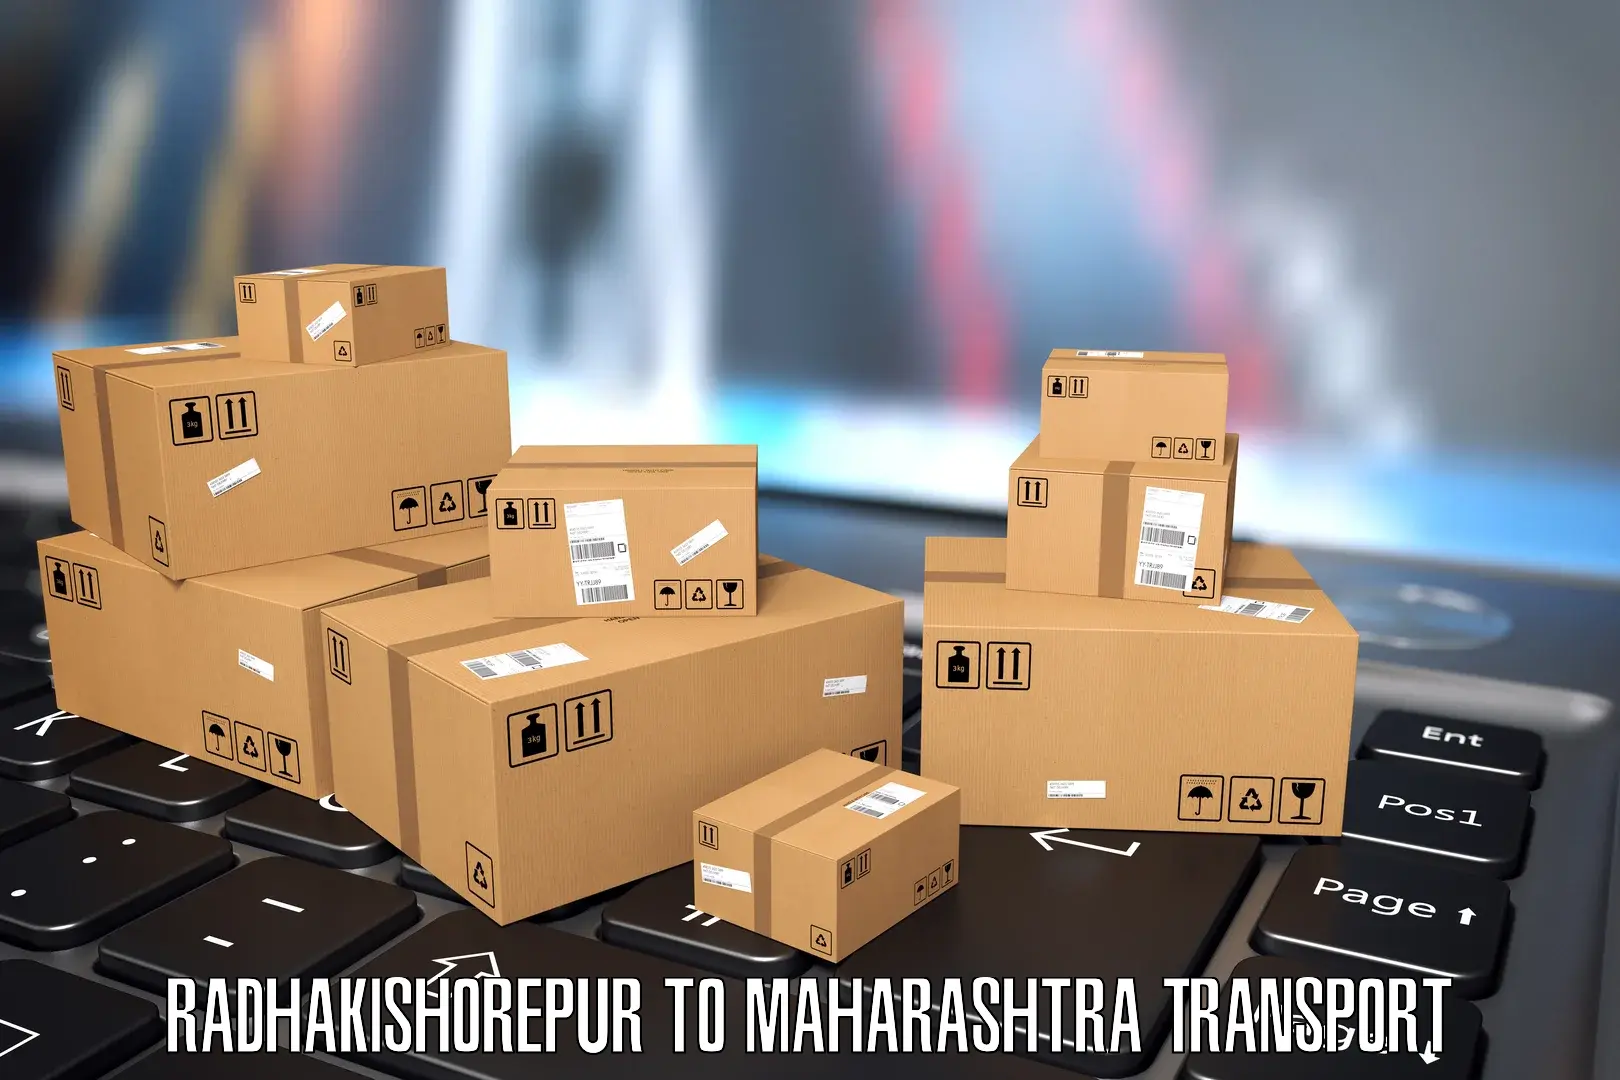 Shipping services Radhakishorepur to Hinganghat